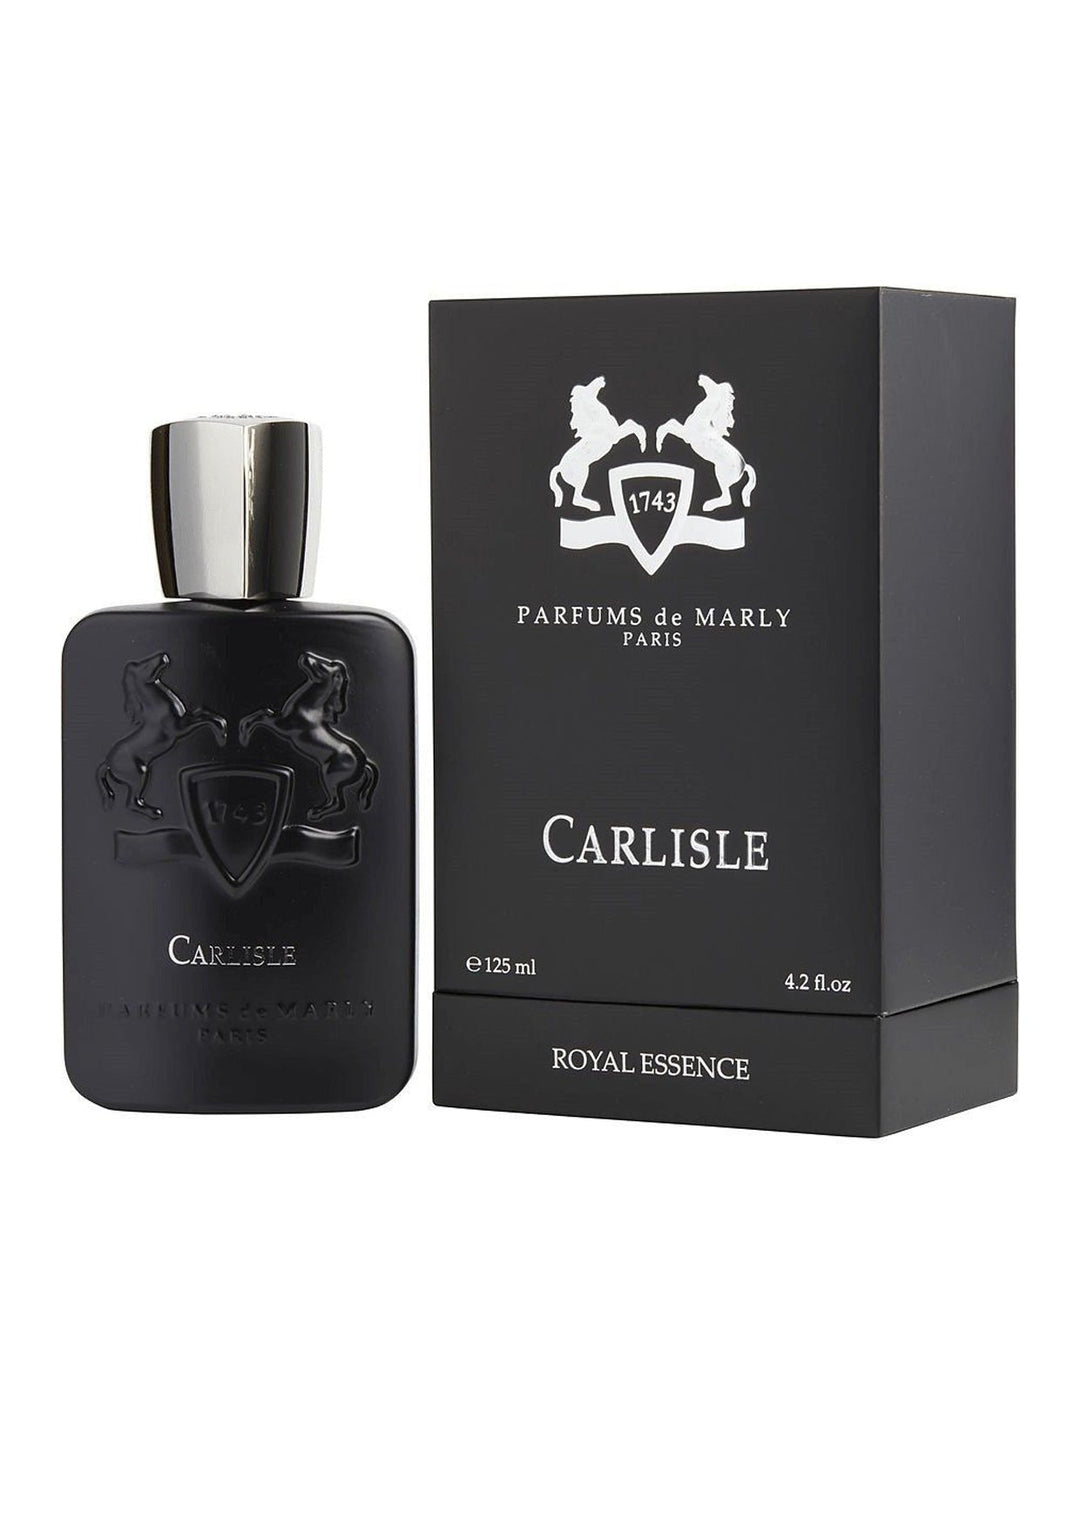 1743 Parfums De Marly Carlisle EDP 125ml